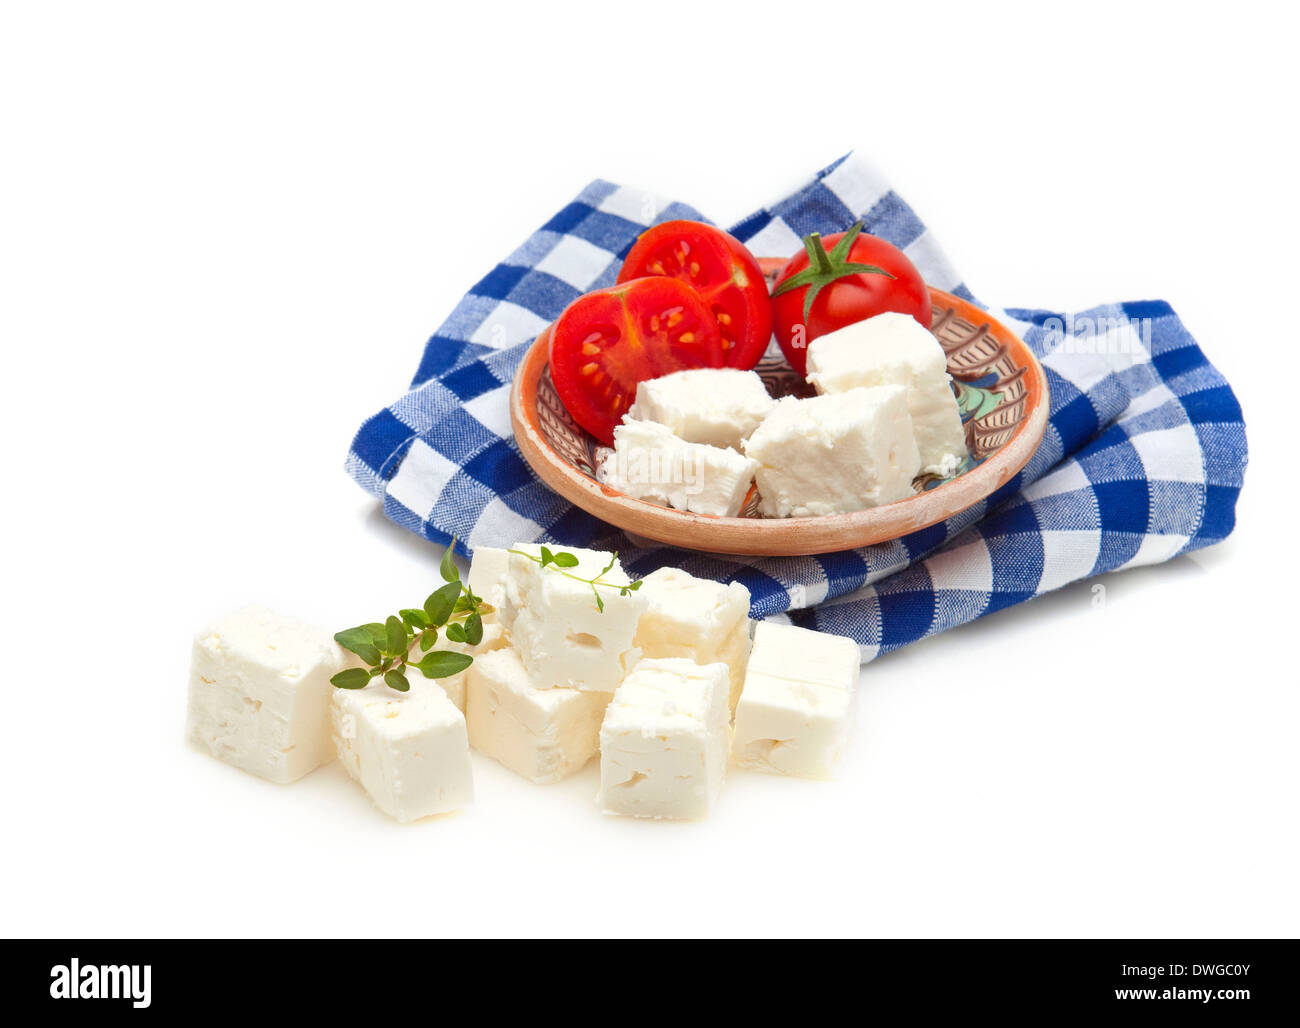 Le fromage feta, tomate et origan grec dénommé avec adittude Banque D'Images